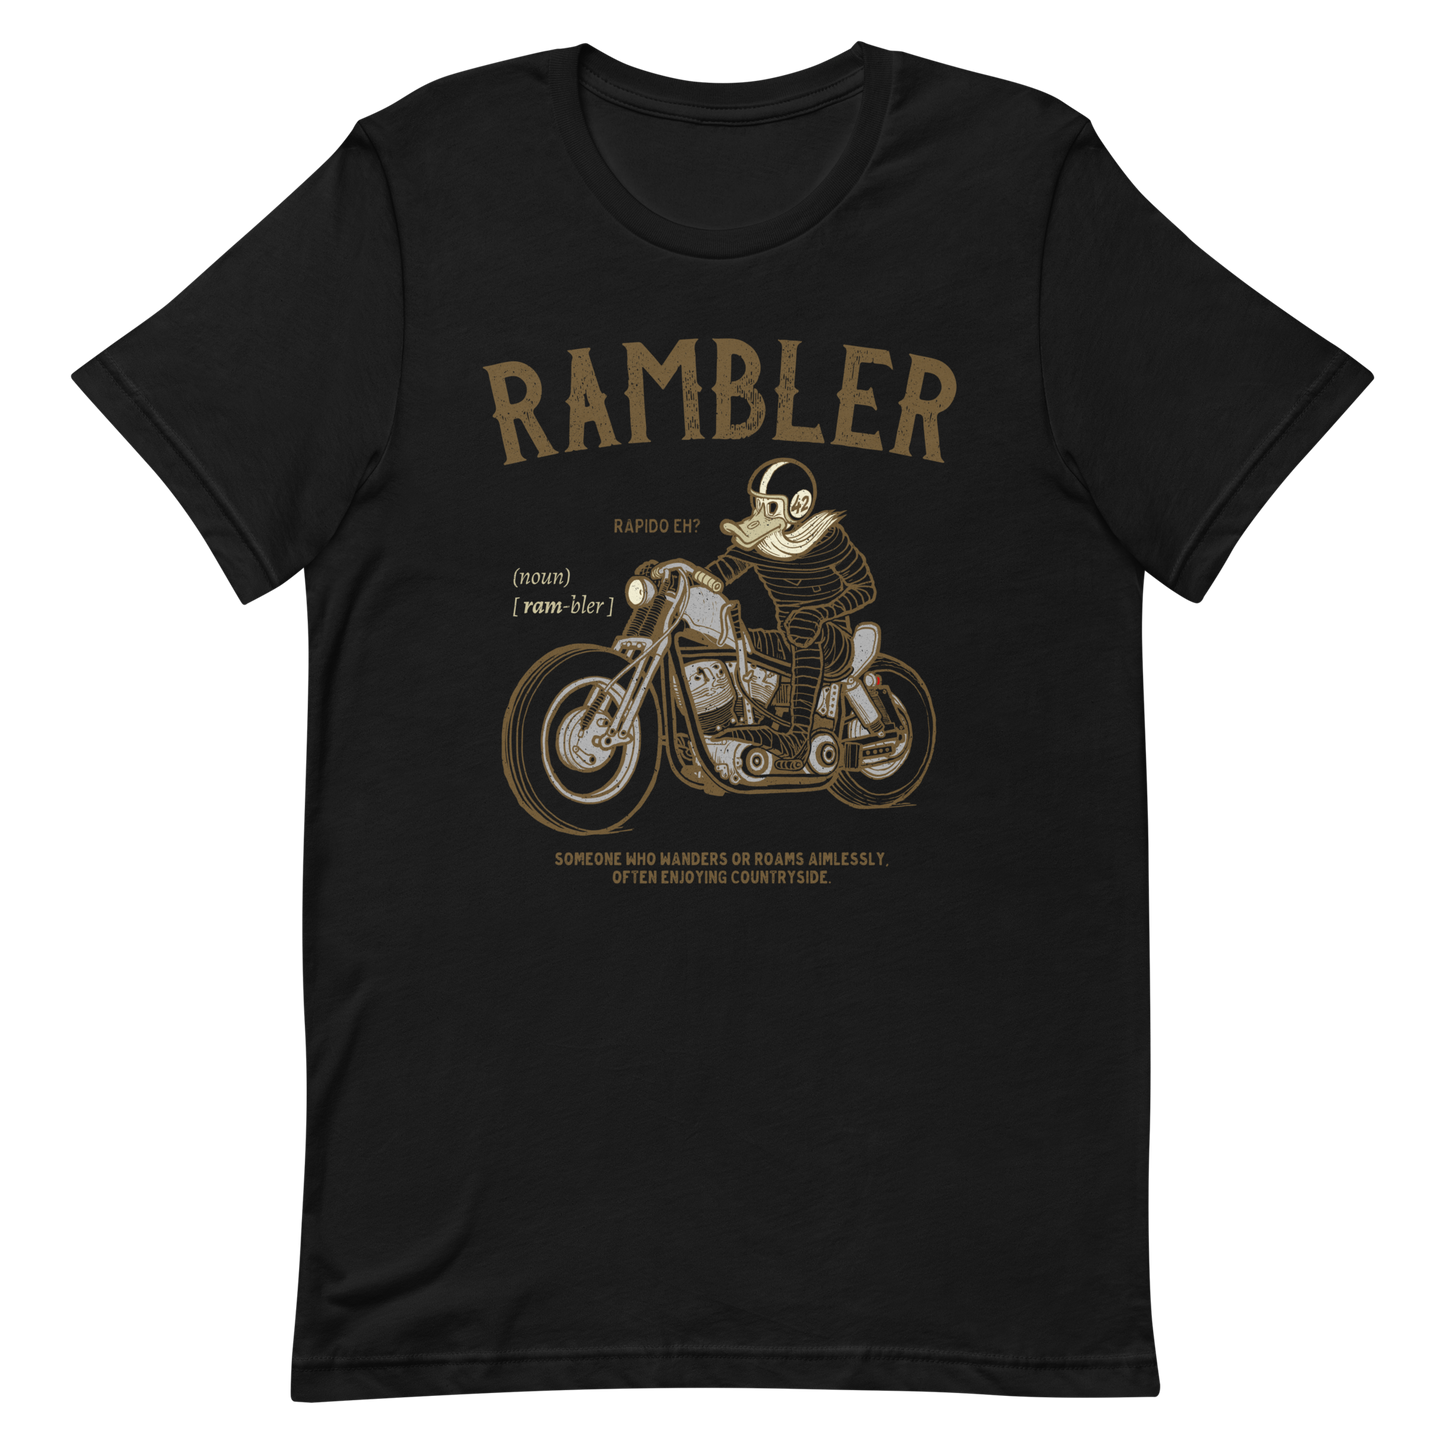 black Rambler Biker T-shirt Hiking Countryside Shirt Vintage Motorcycle Tourer Shirt Traveling Journey Tee Bobber Biker Shirt Harley Davidson Tee